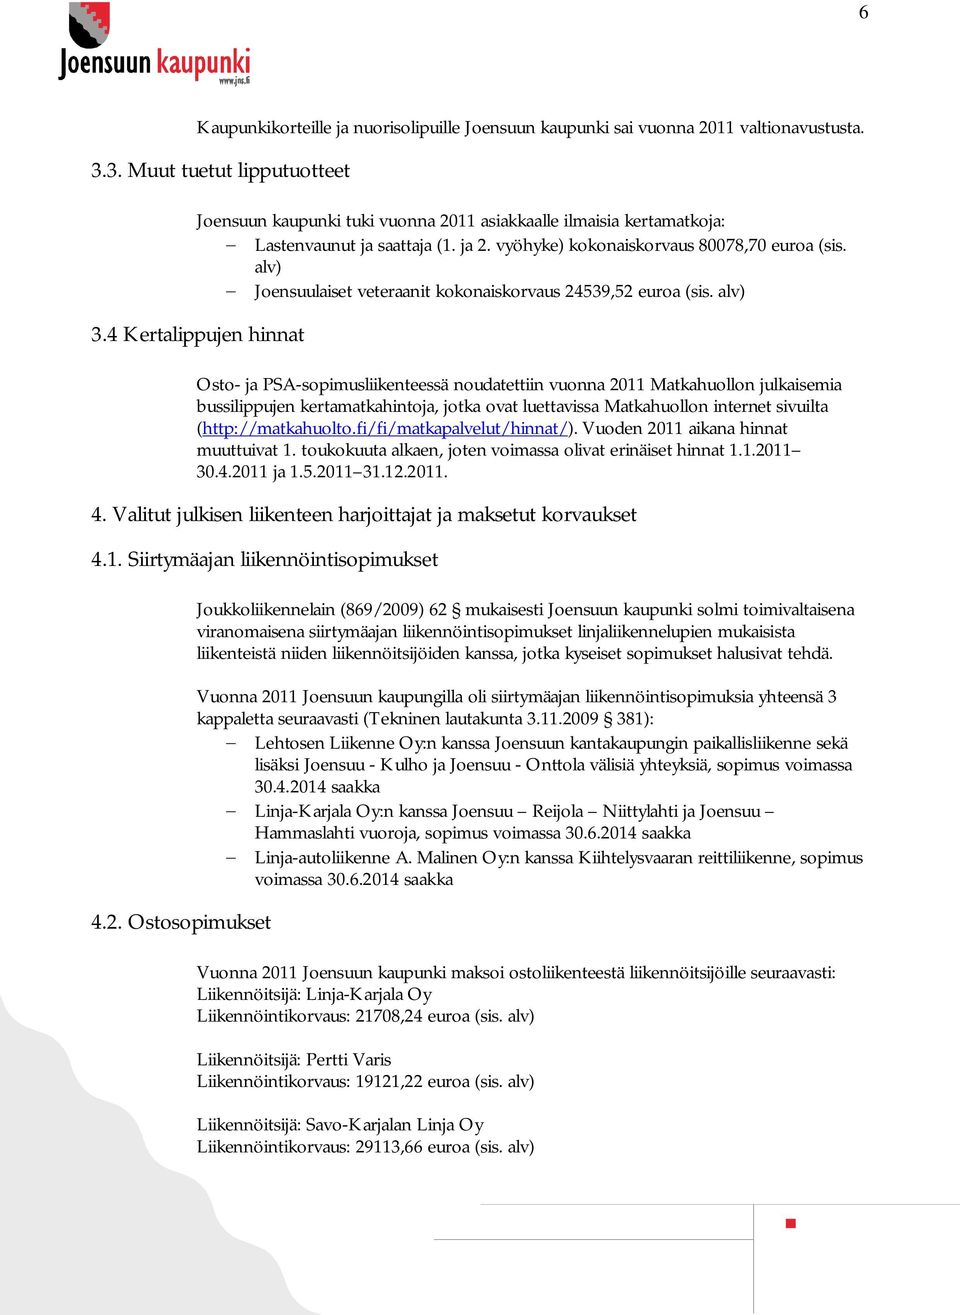 alv) Joensuulaiset veteraanit kokonaiskorvaus 24539,52 euroa (sis. alv) 3.